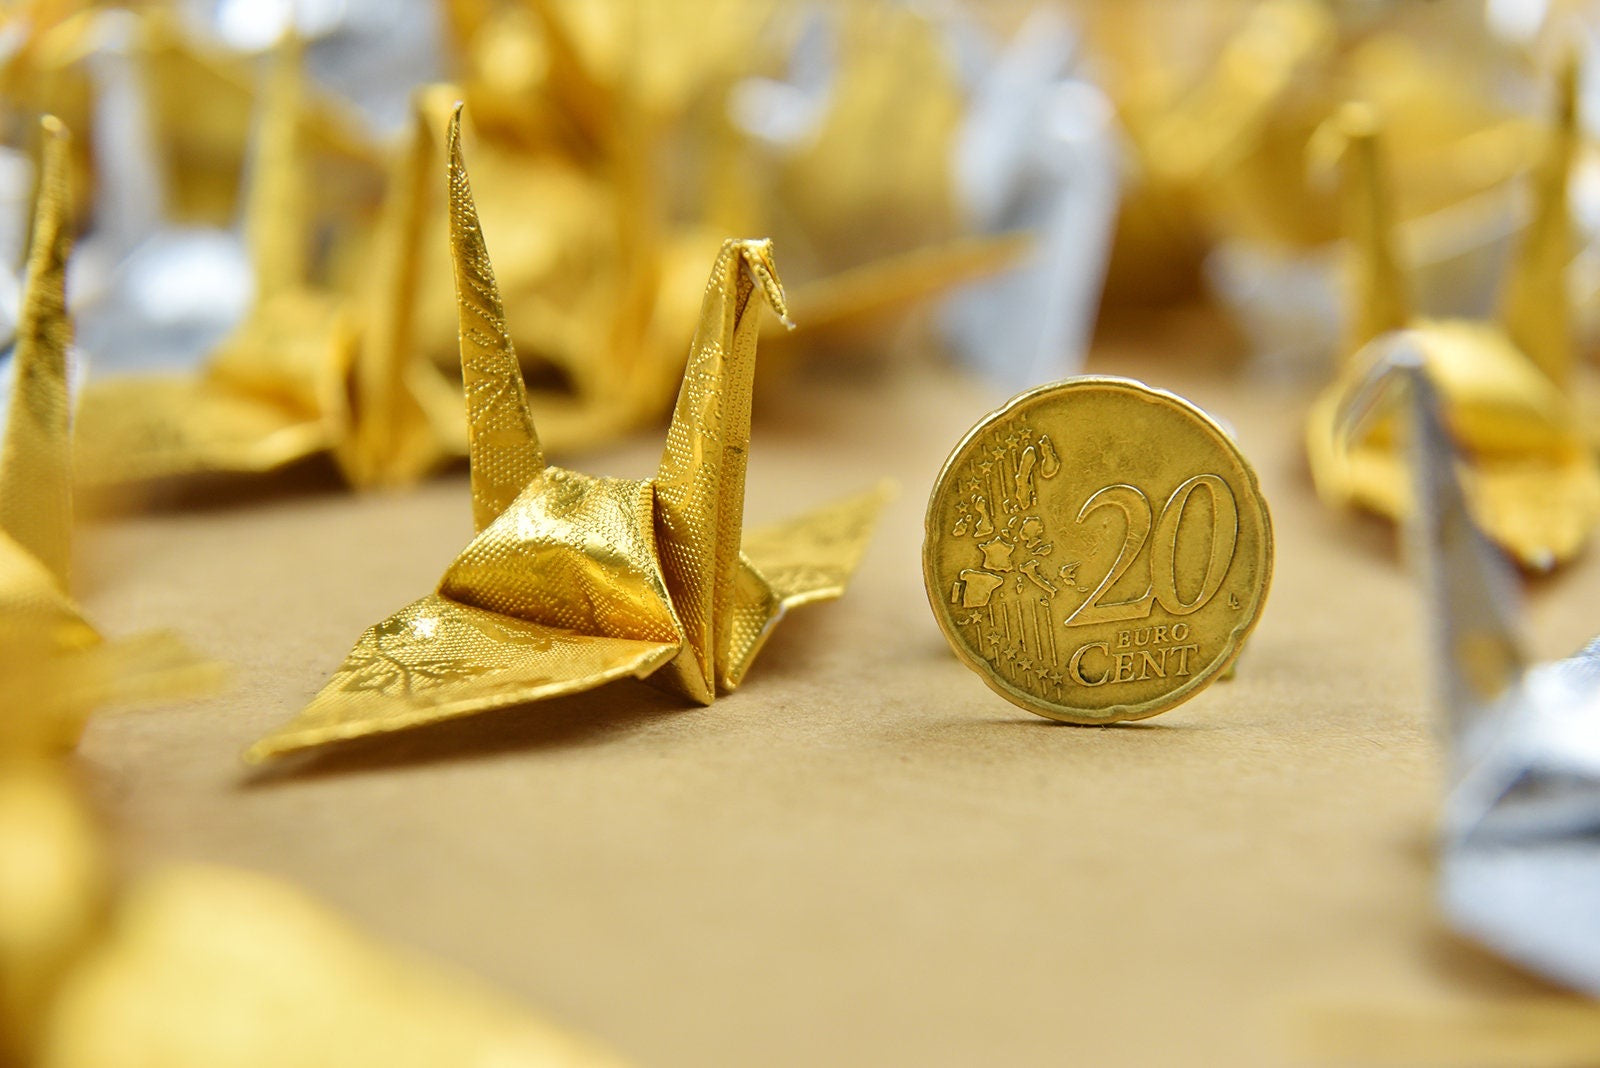 100 grullas de origami - doradas y plateadas con patrón de rosas - 7,5 cm (3 pulgadas) - para decoración de bodas, bodas japonesas